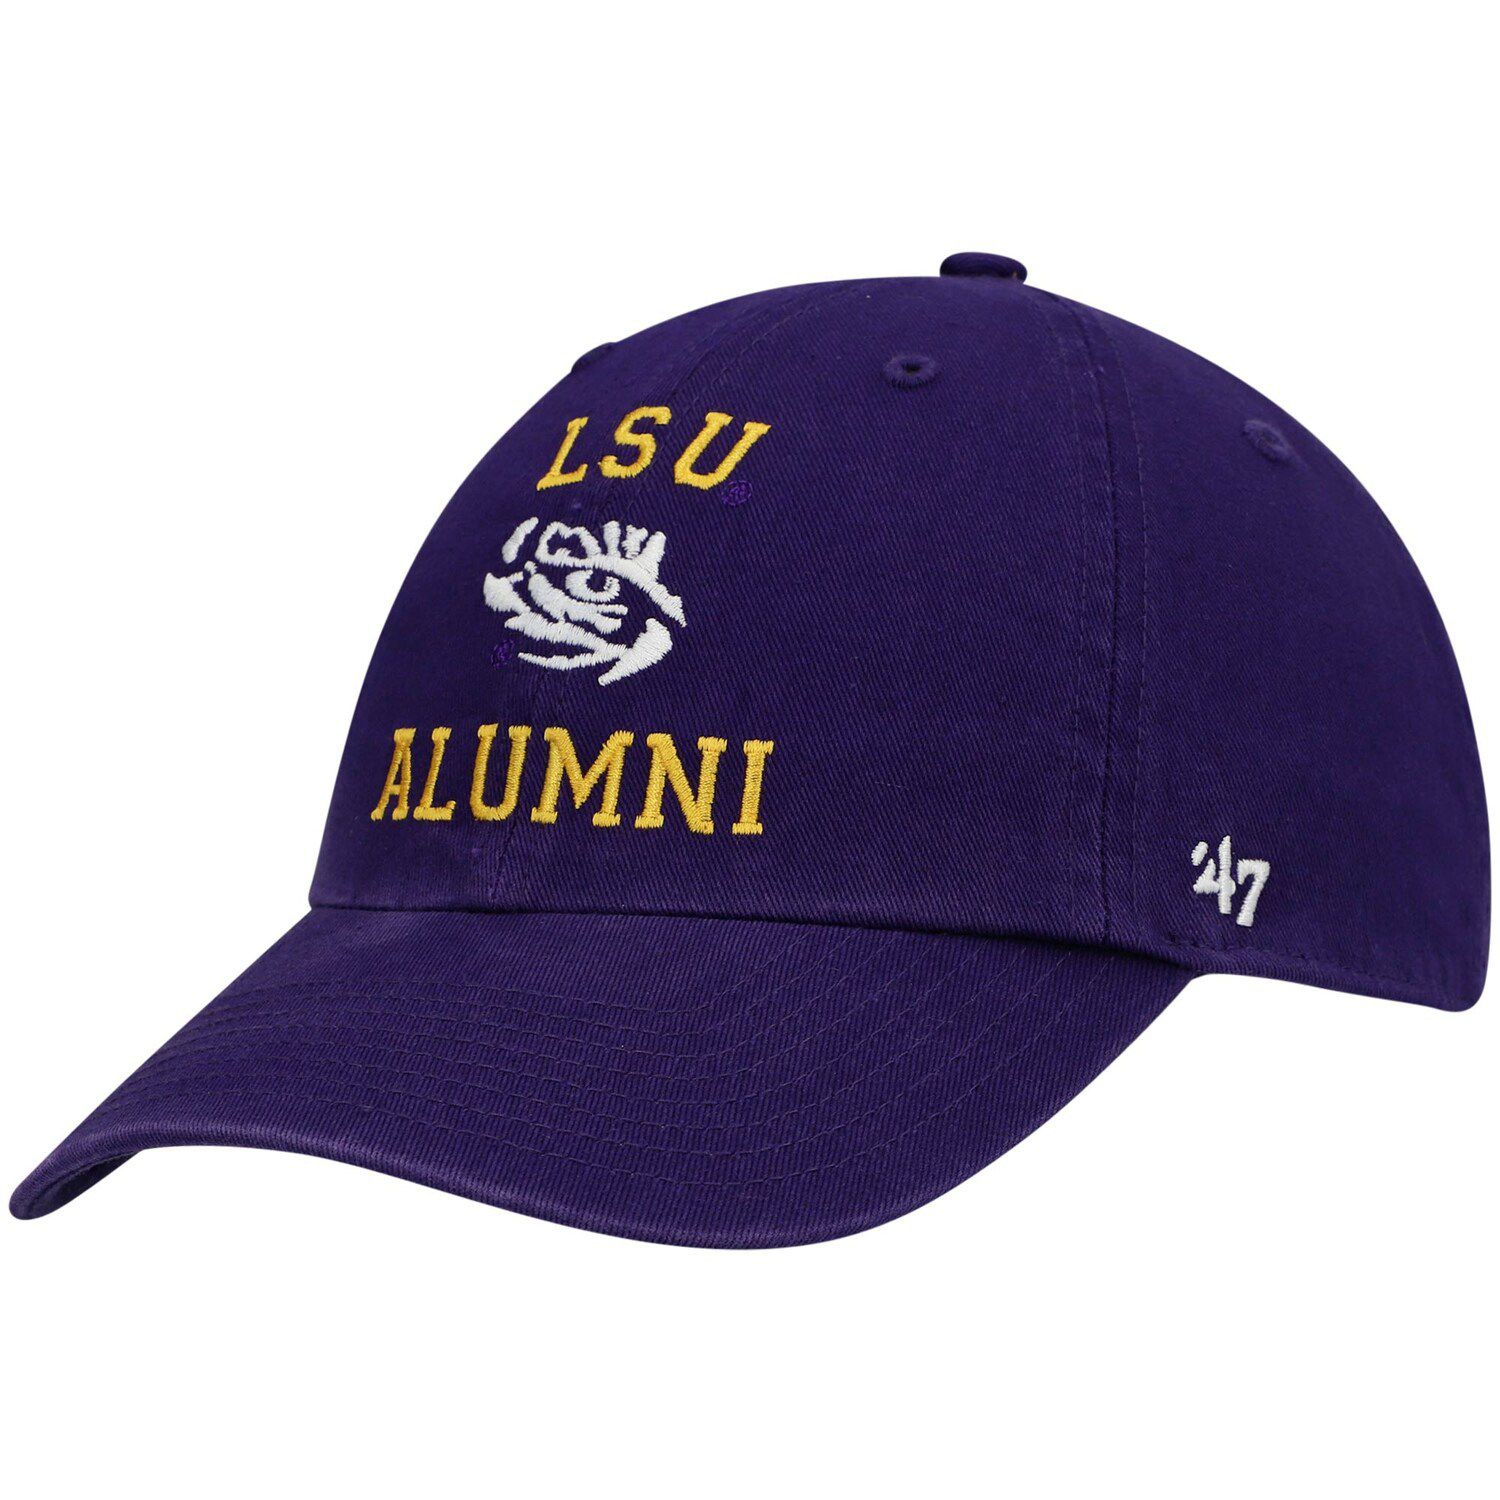 Image for Unbranded Men's '47 Purple LSU Tigers Alumni Clean Up Adjustable Hat at Kohl's.